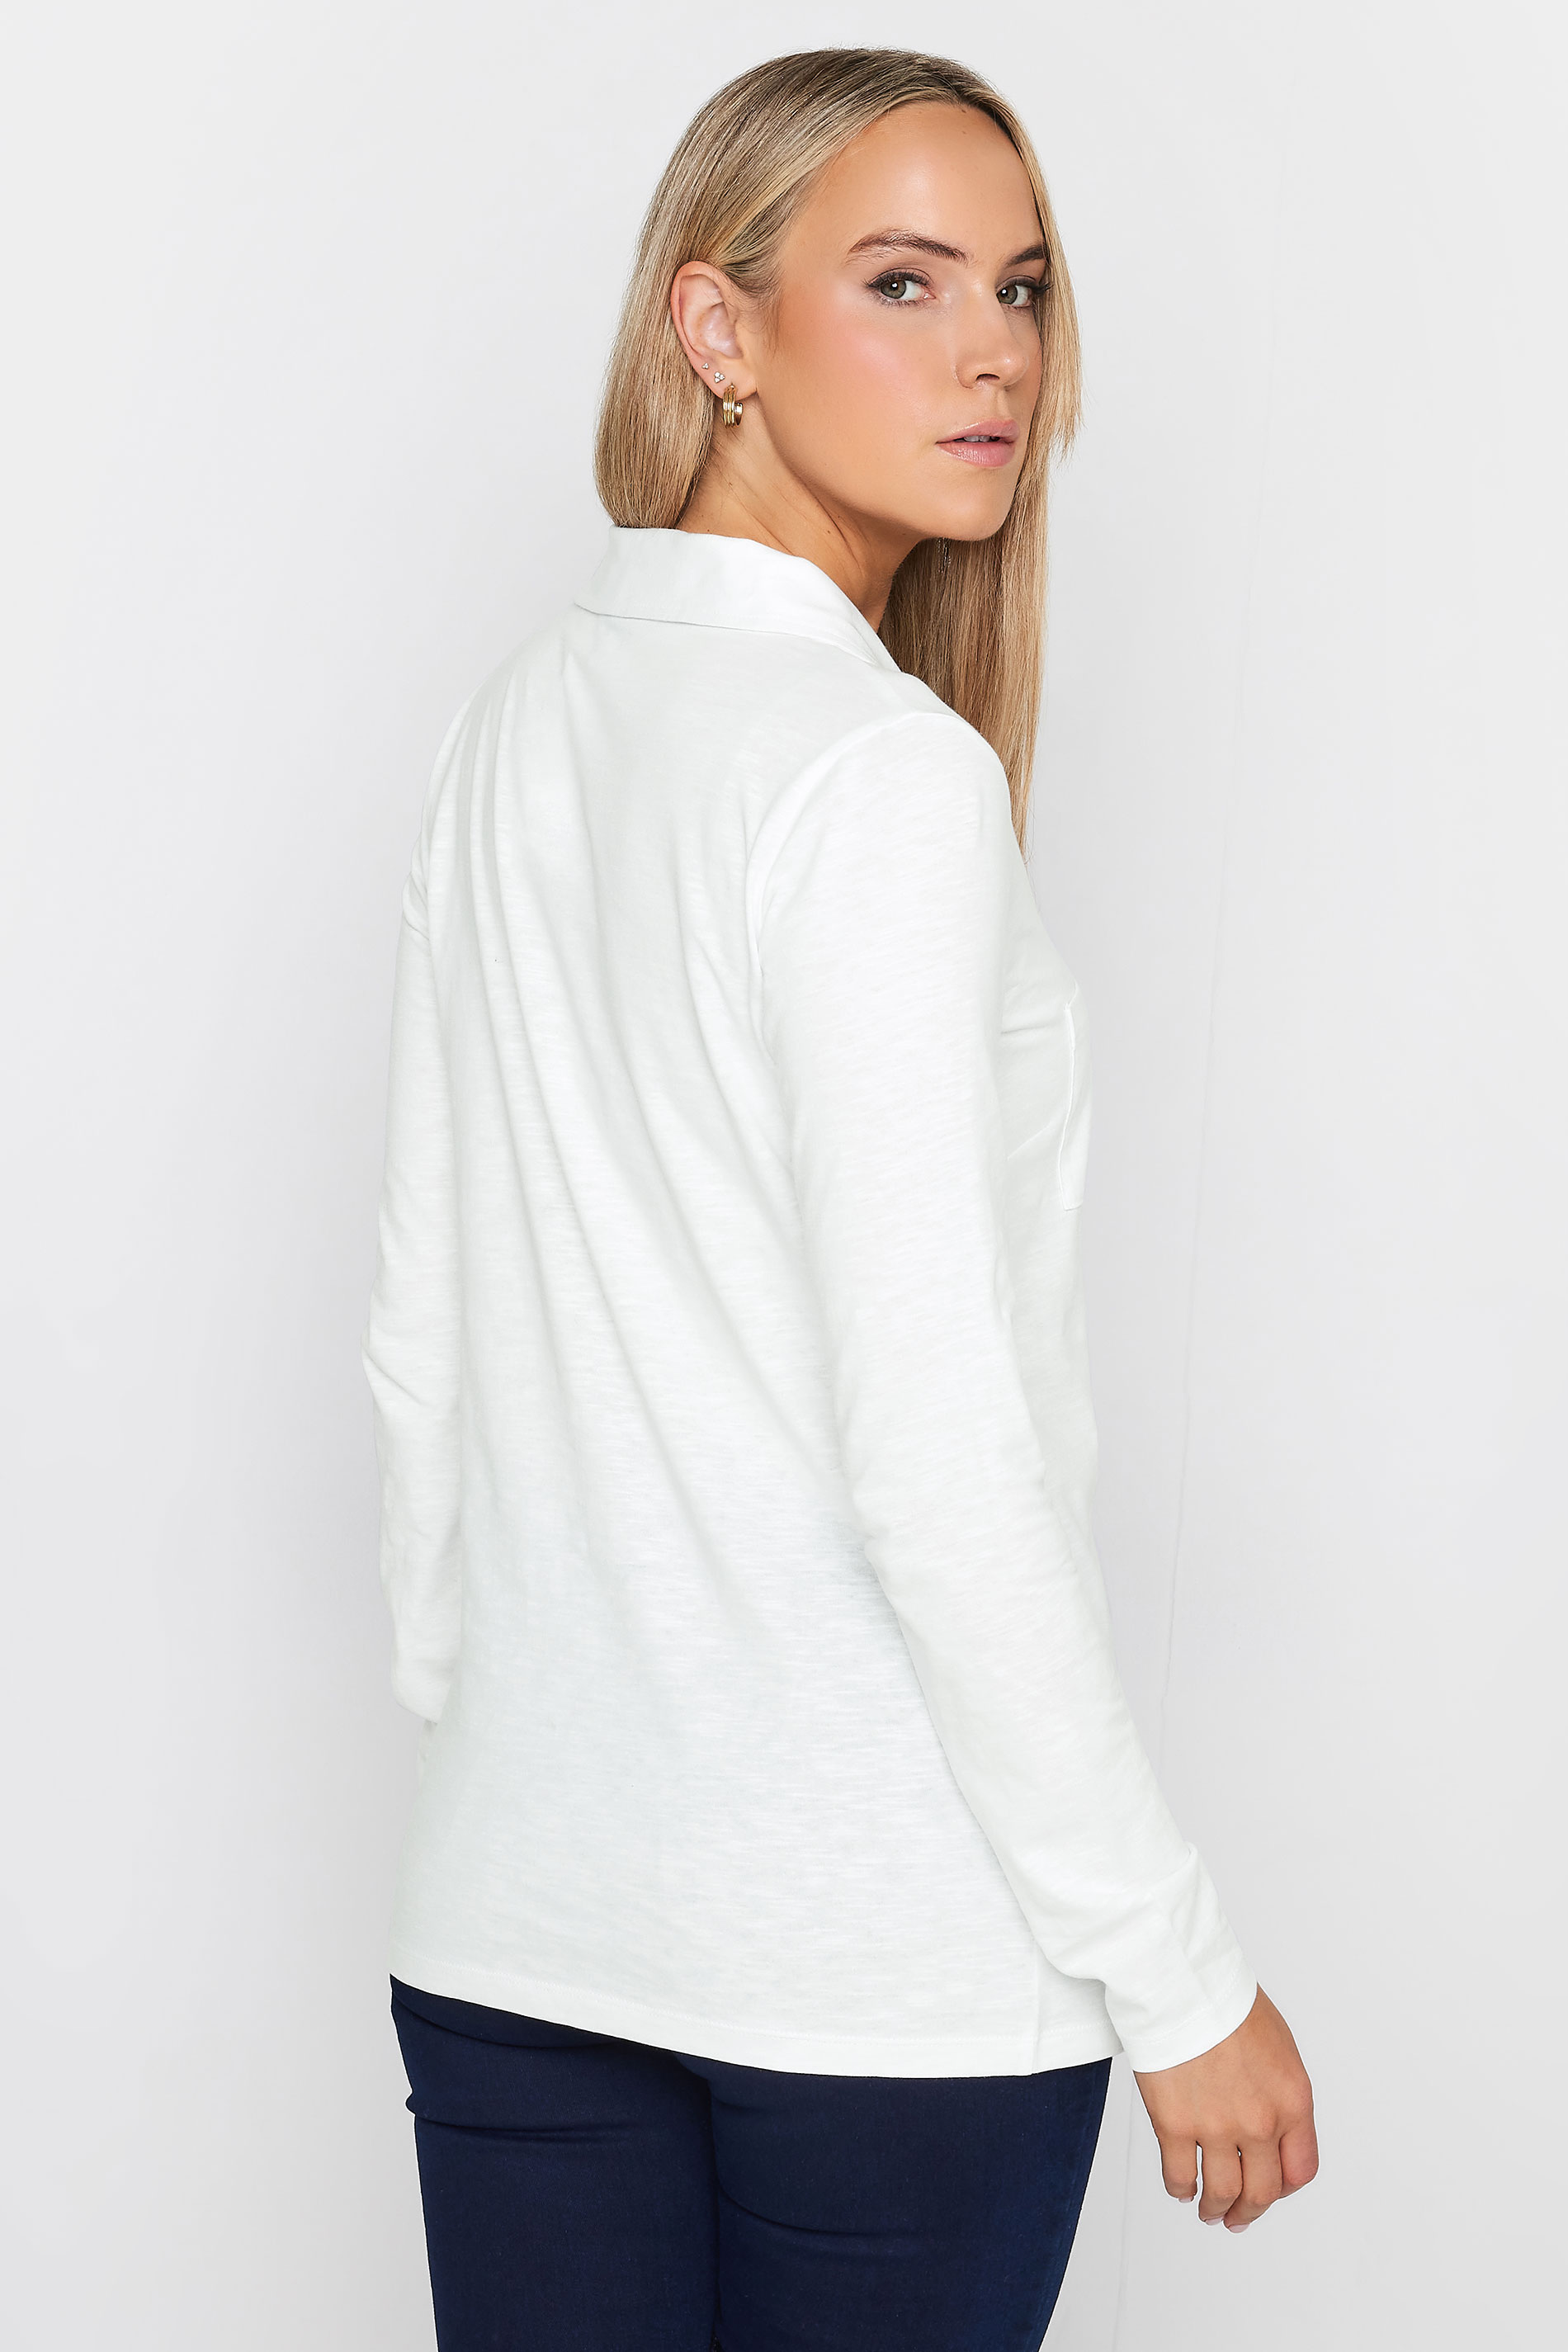 LTS Tall Women's White Cotton Jersey Shirt | Long Tall Sally 3